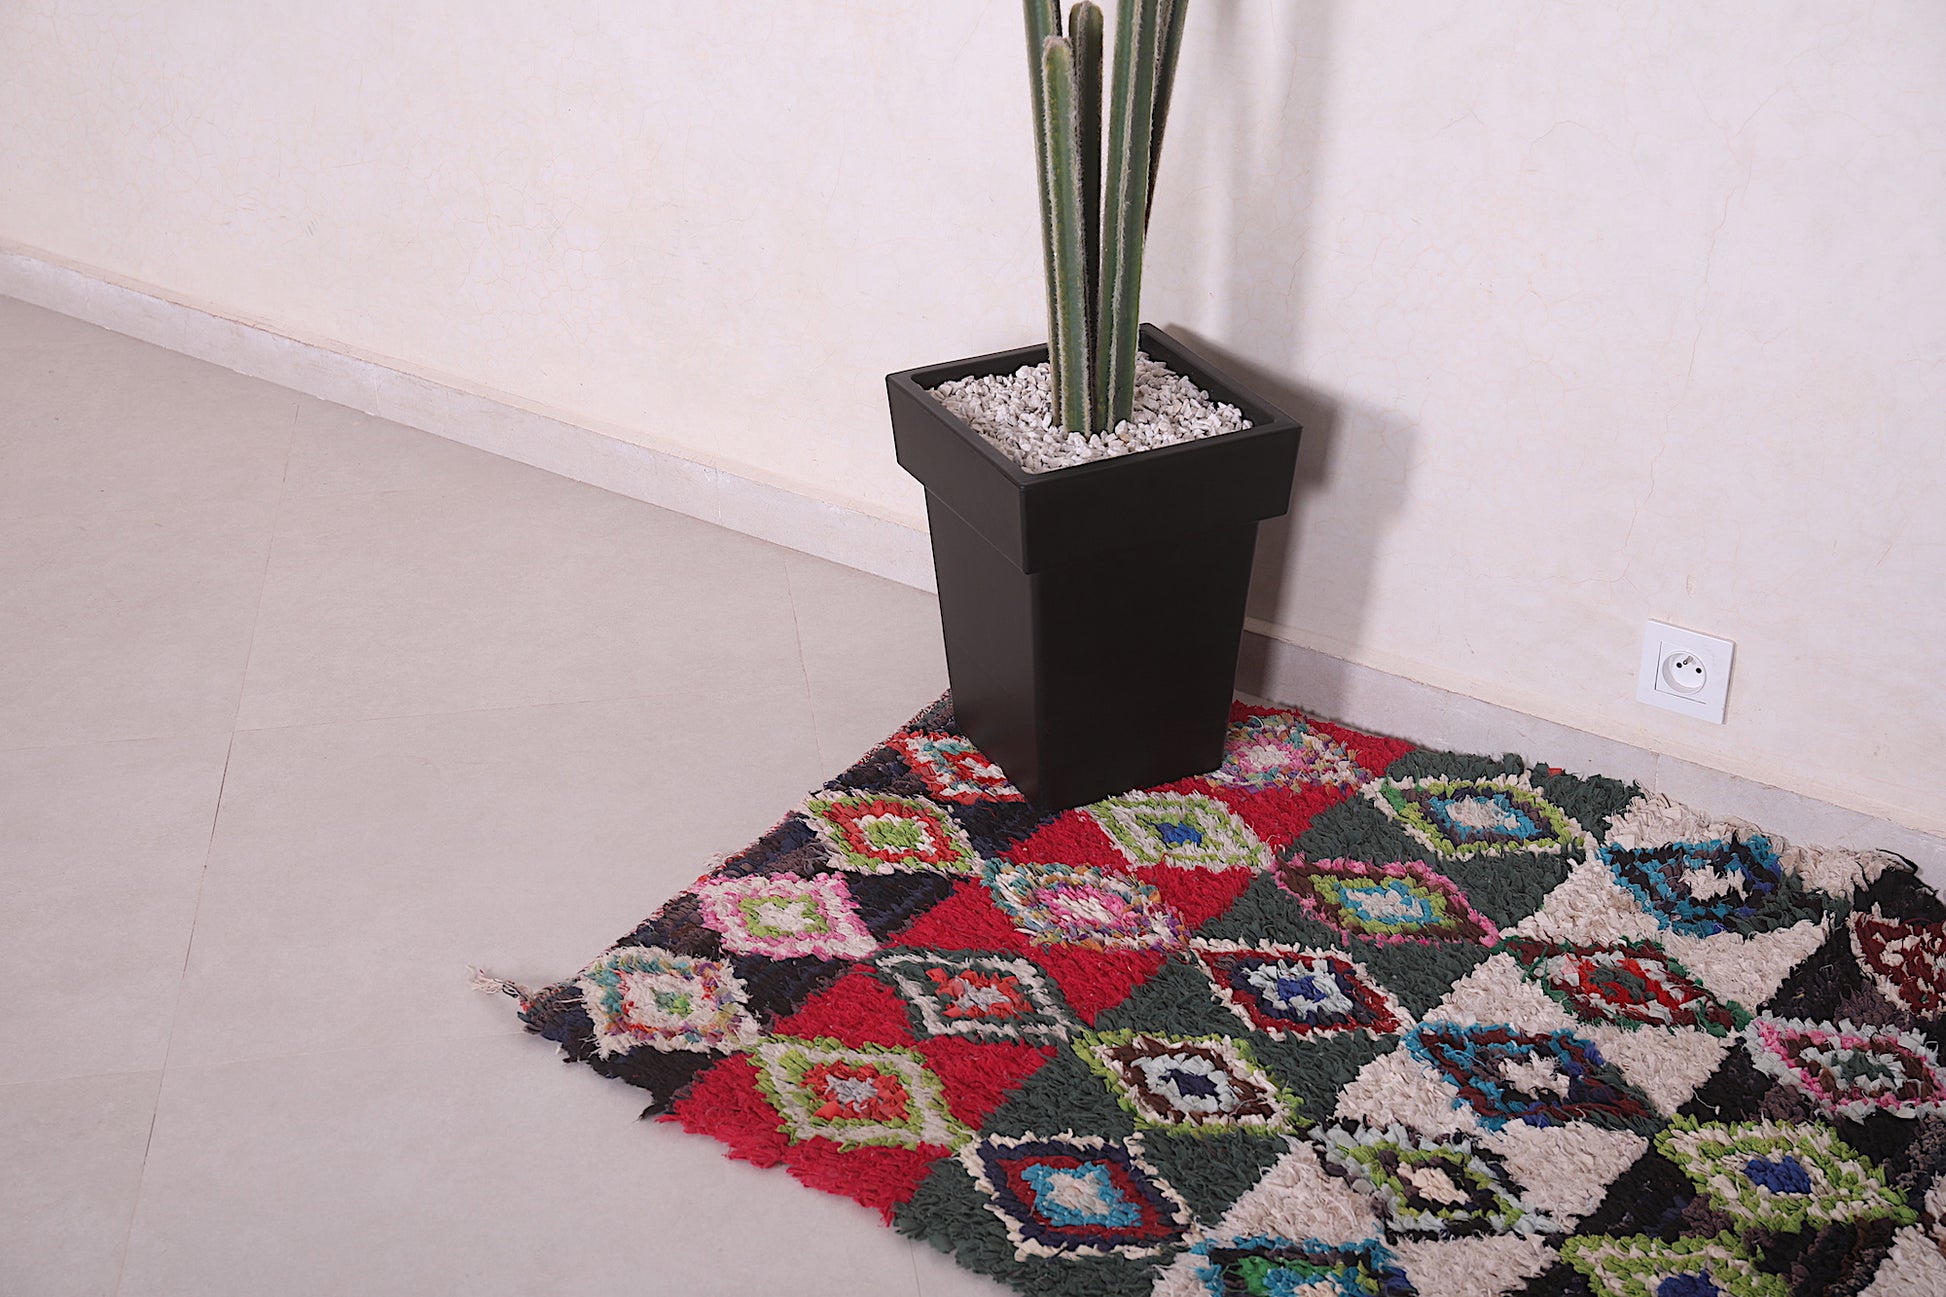 Boucherouite azilal rug 3 x 5.1 Feet